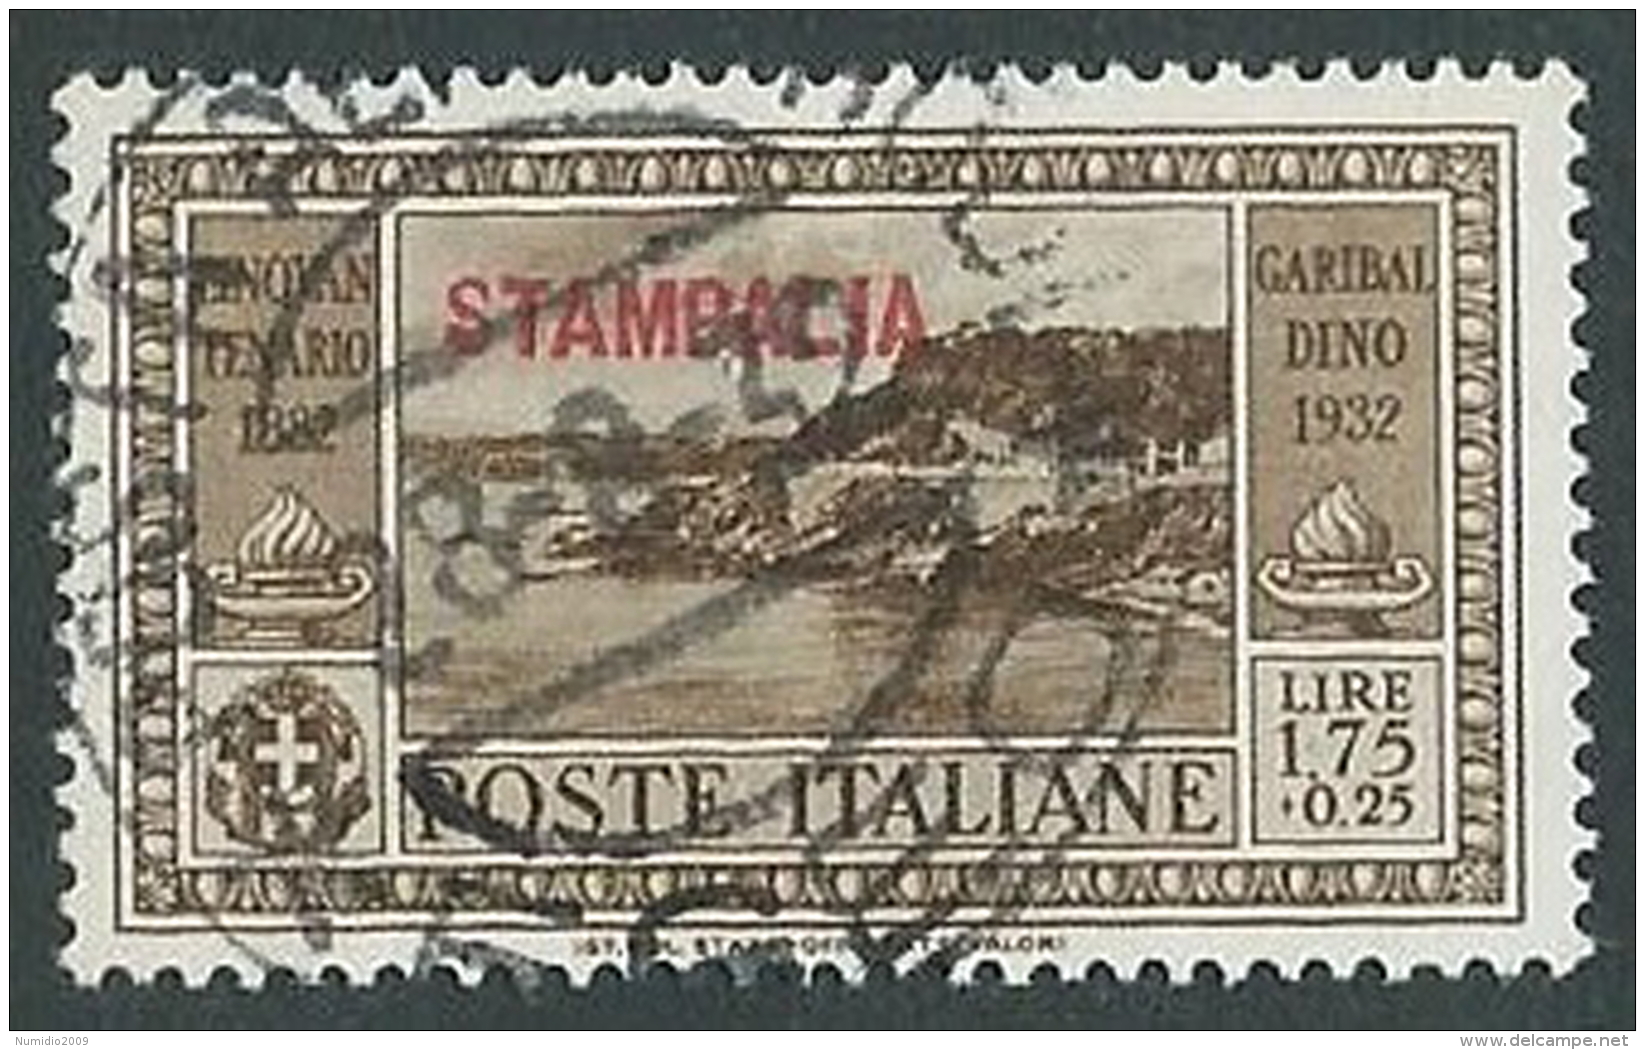 1932 EGEO STAMPALIA USATO GARIBALDI 1,75 LIRE - U27-7 - Egée (Stampalia)